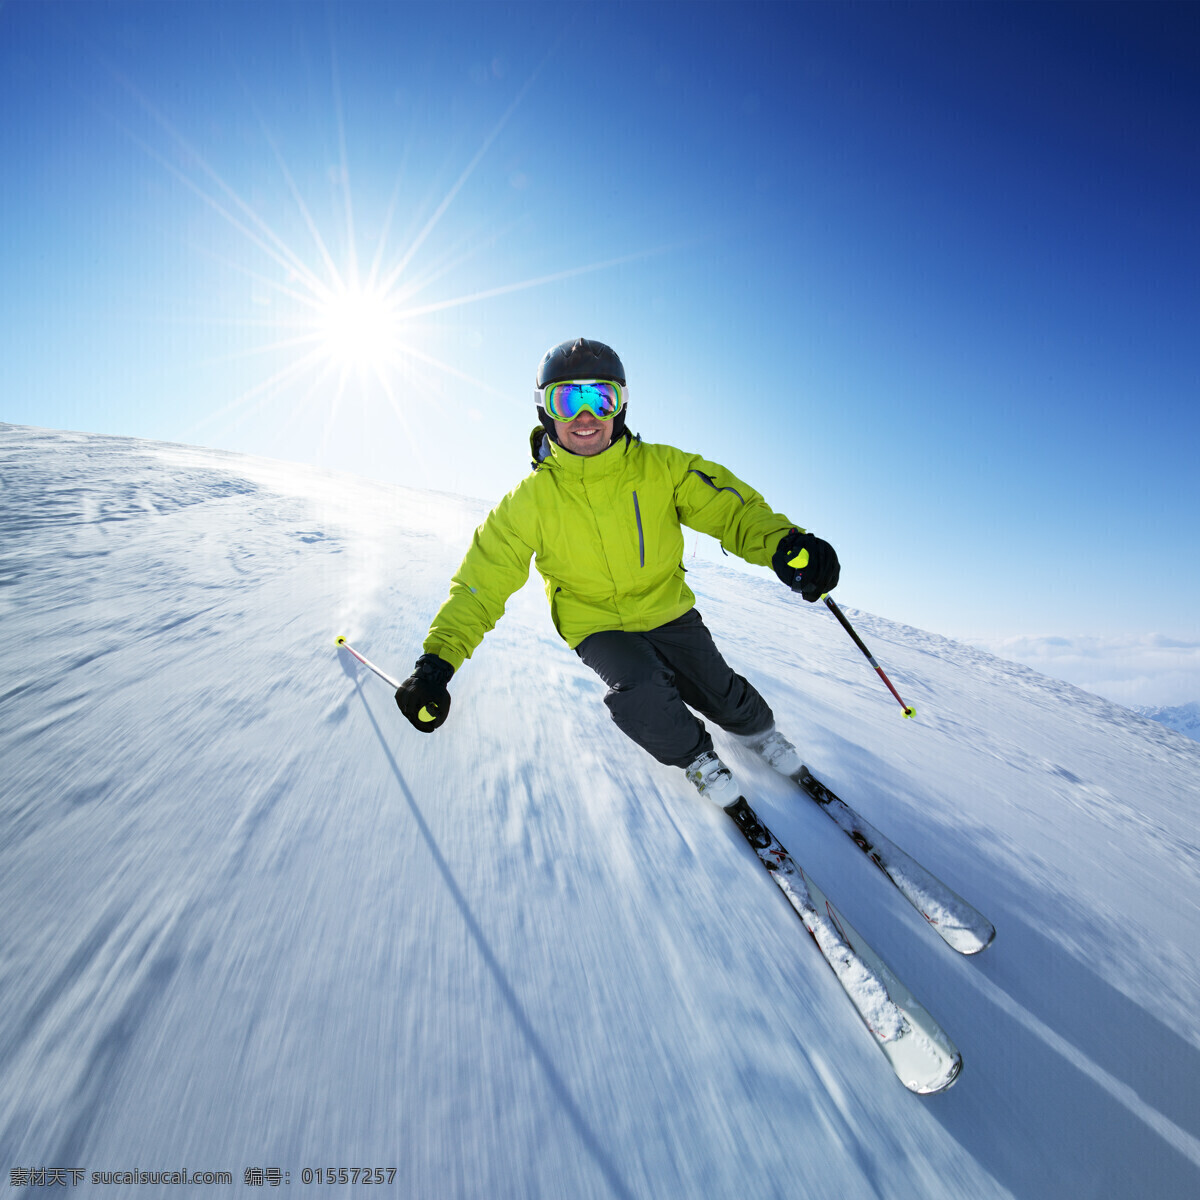 向下 滑雪 人物 阳光 运动 雪地 雪花 滑雪板 户外运动 滑雪图片 生活百科